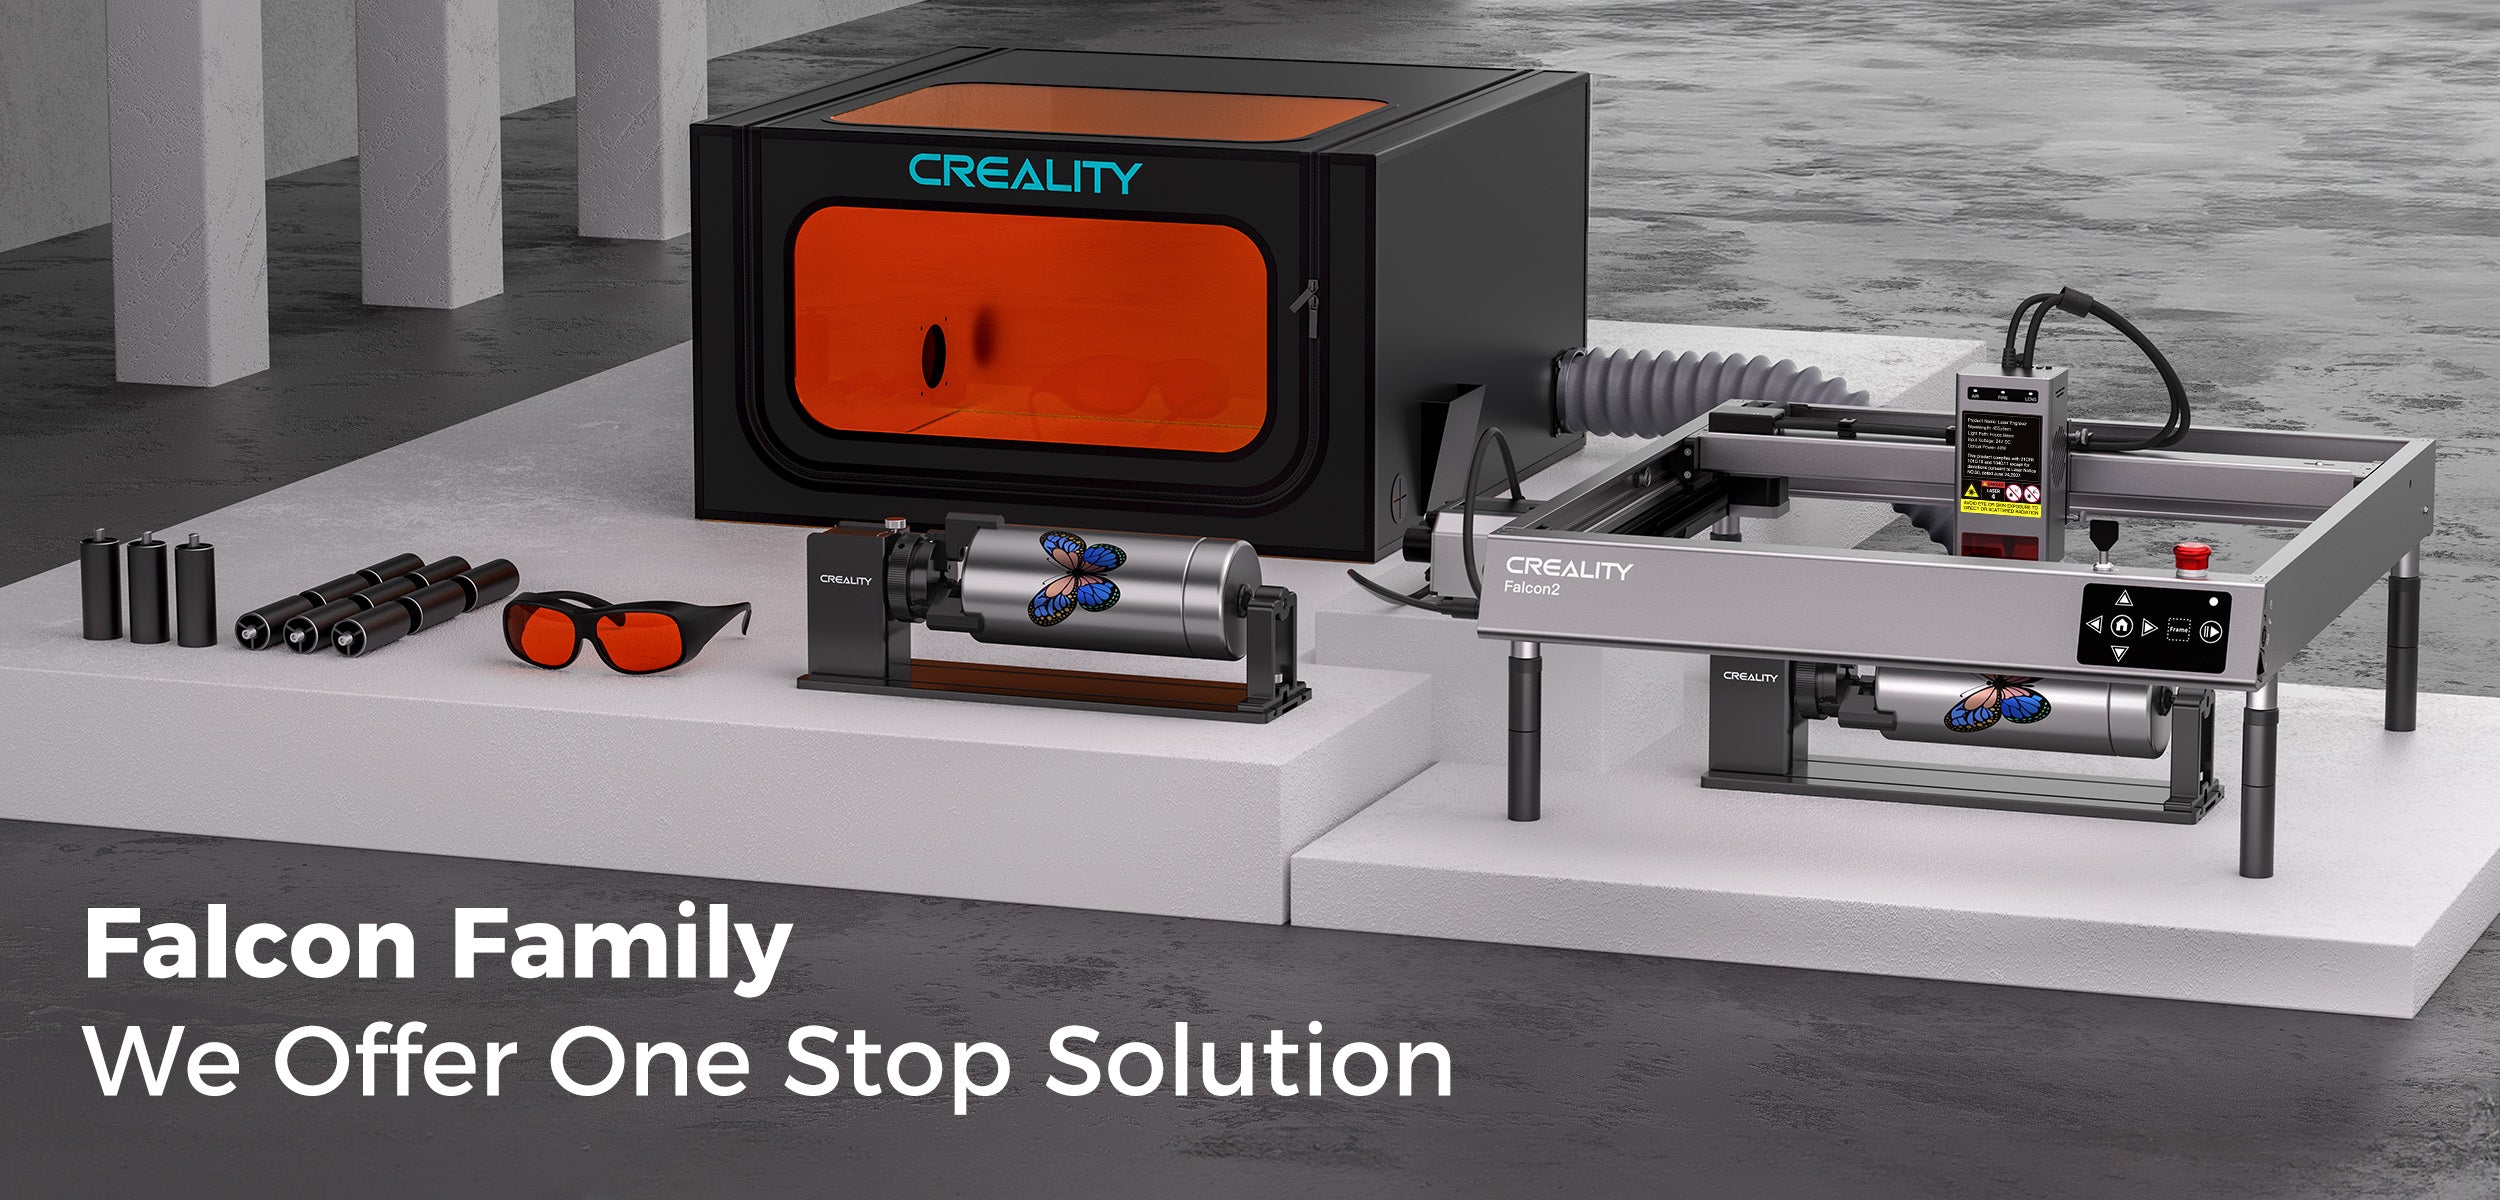 crealityfalcon laser engraver series family